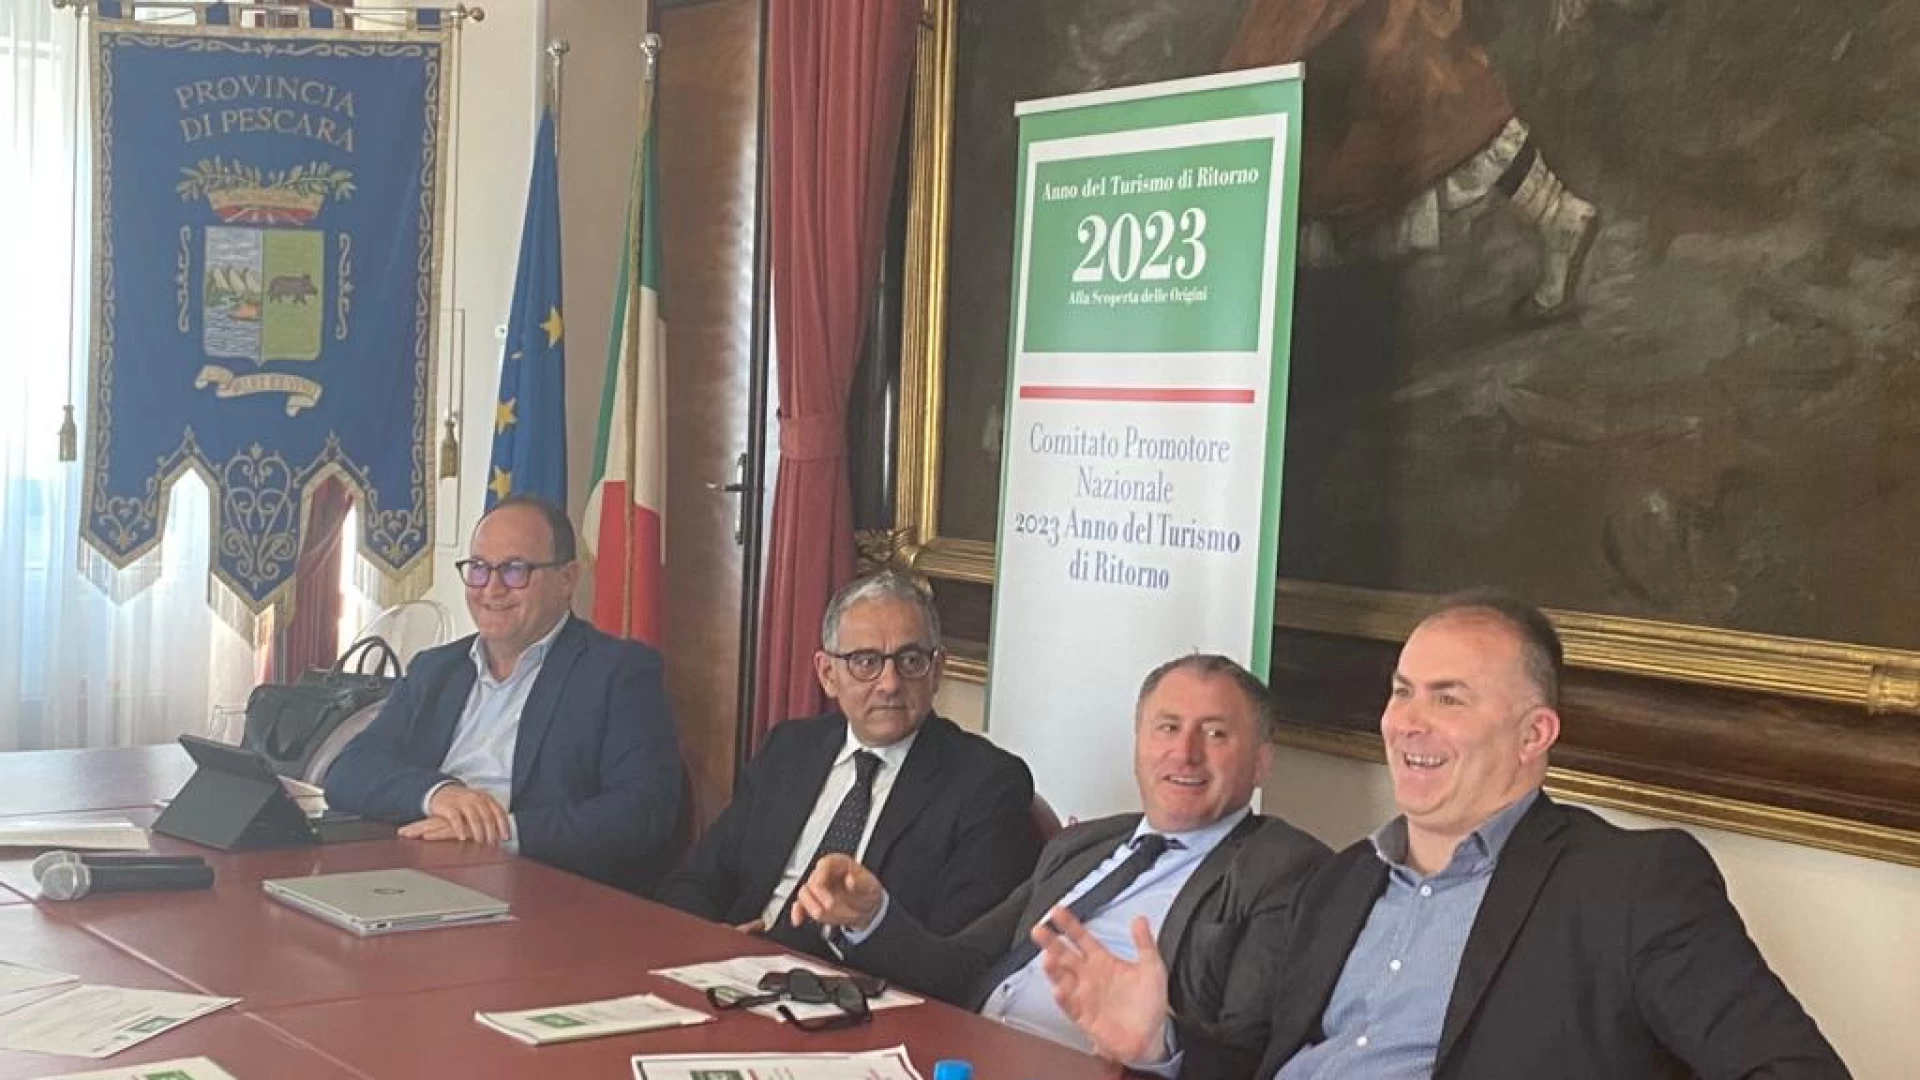 Pescara: presentato il progetto “2023 Anno del turismo di ritorno”. Presente anche il presidente della Provincia dell’Aquila Angelo Caruso.